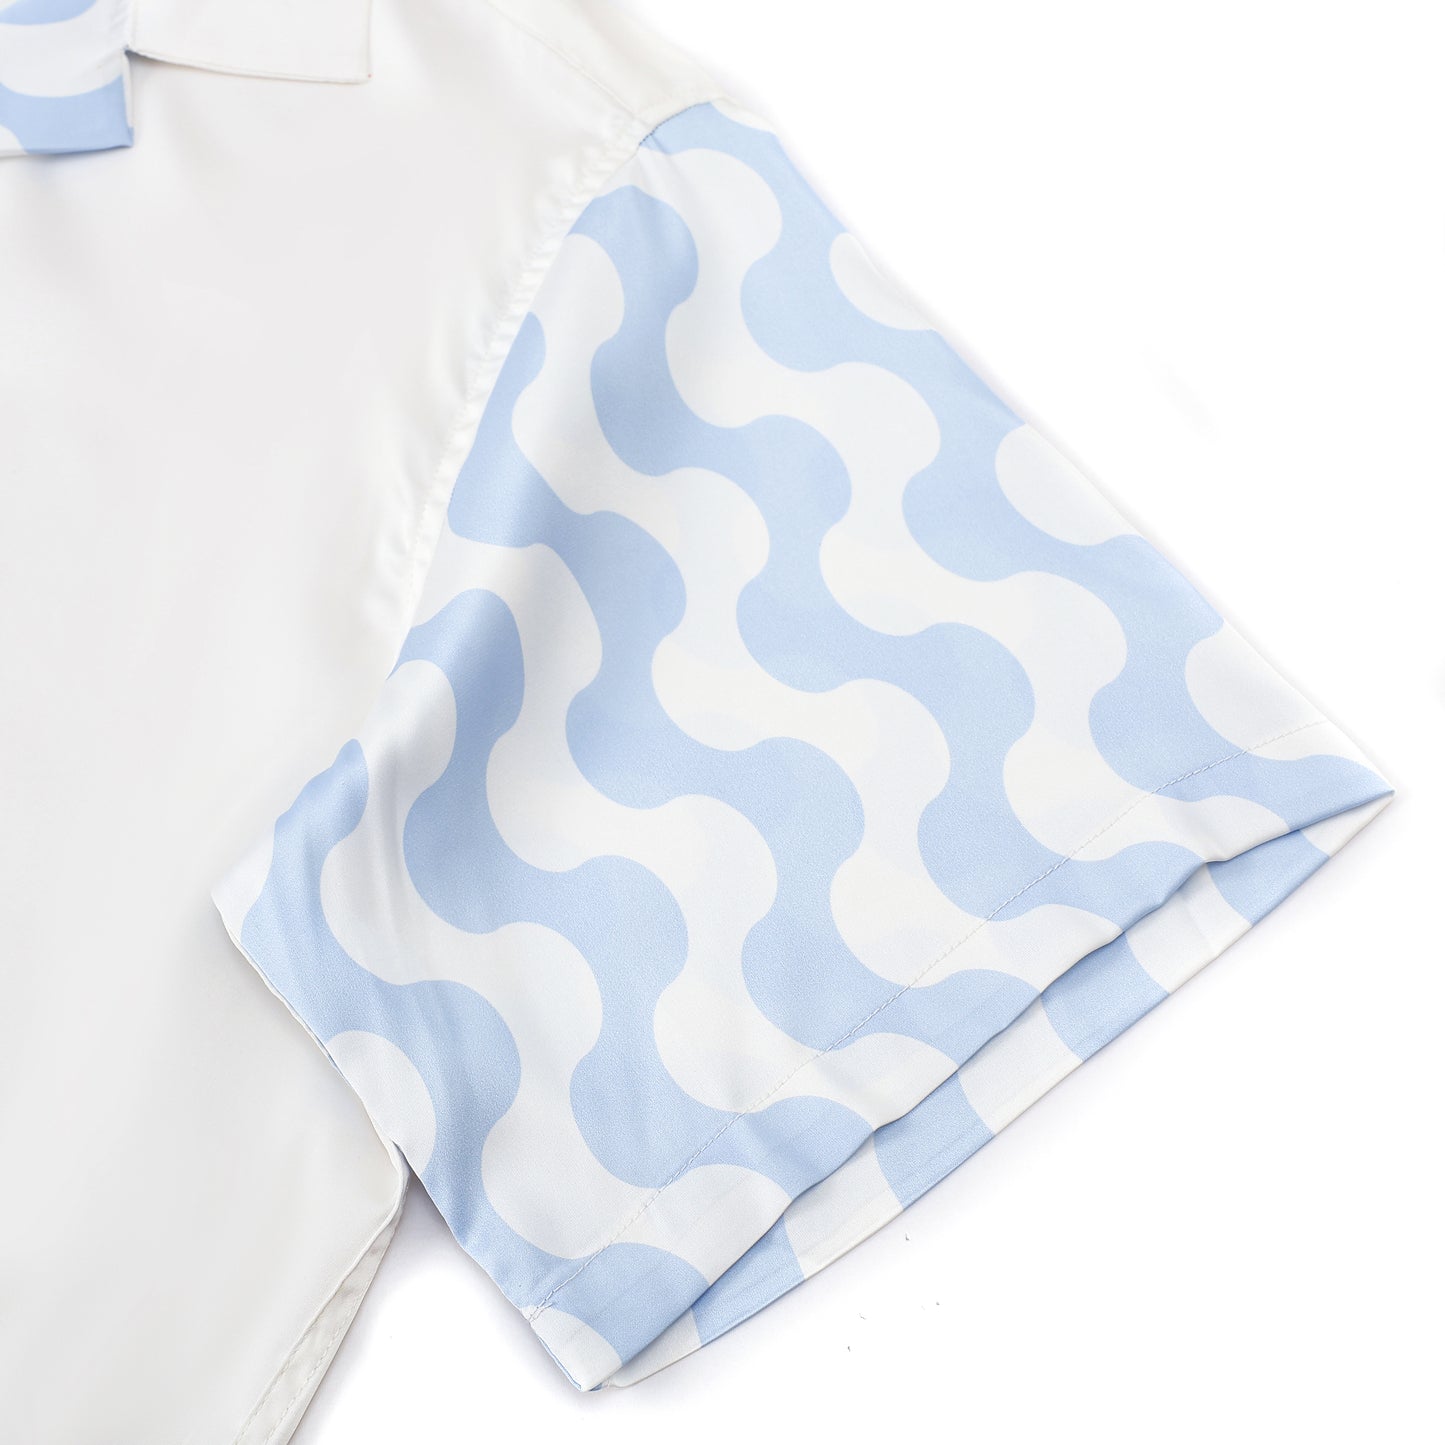 Tennis Element Print Short Sleeve Camp Collar Shirt